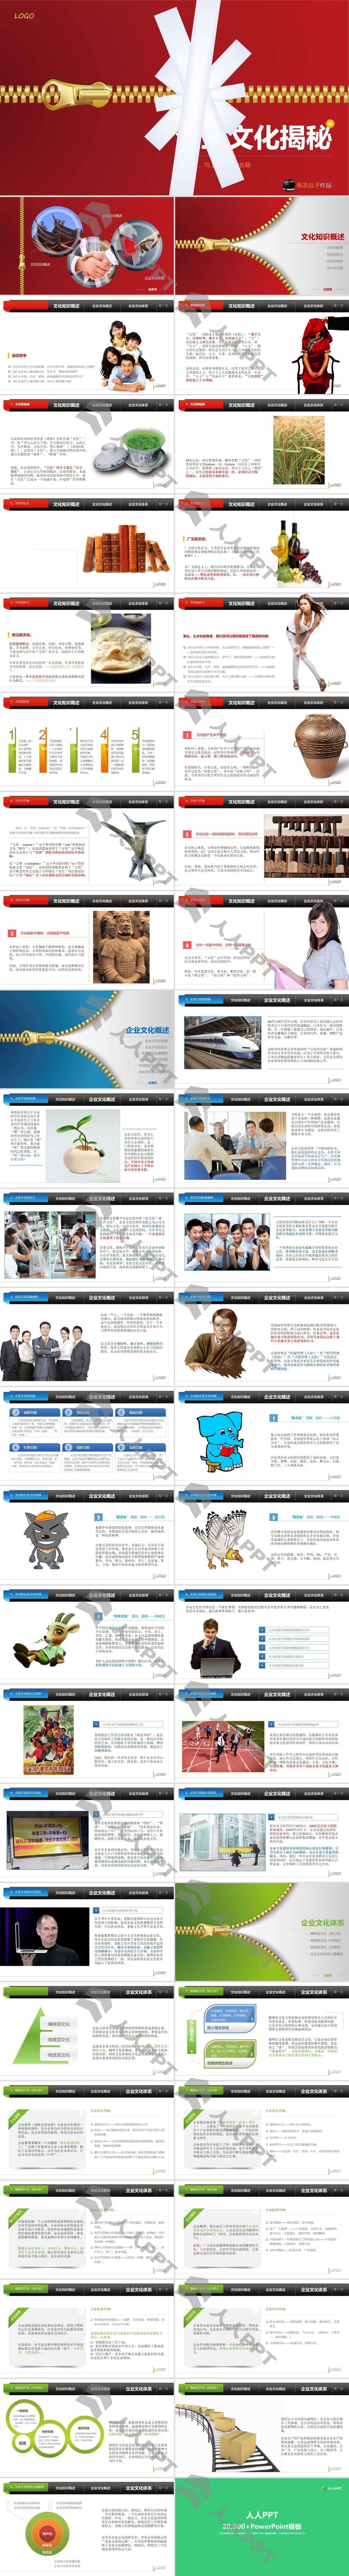 企业文化揭秘――企业高管培训PPT课件模板下载长图